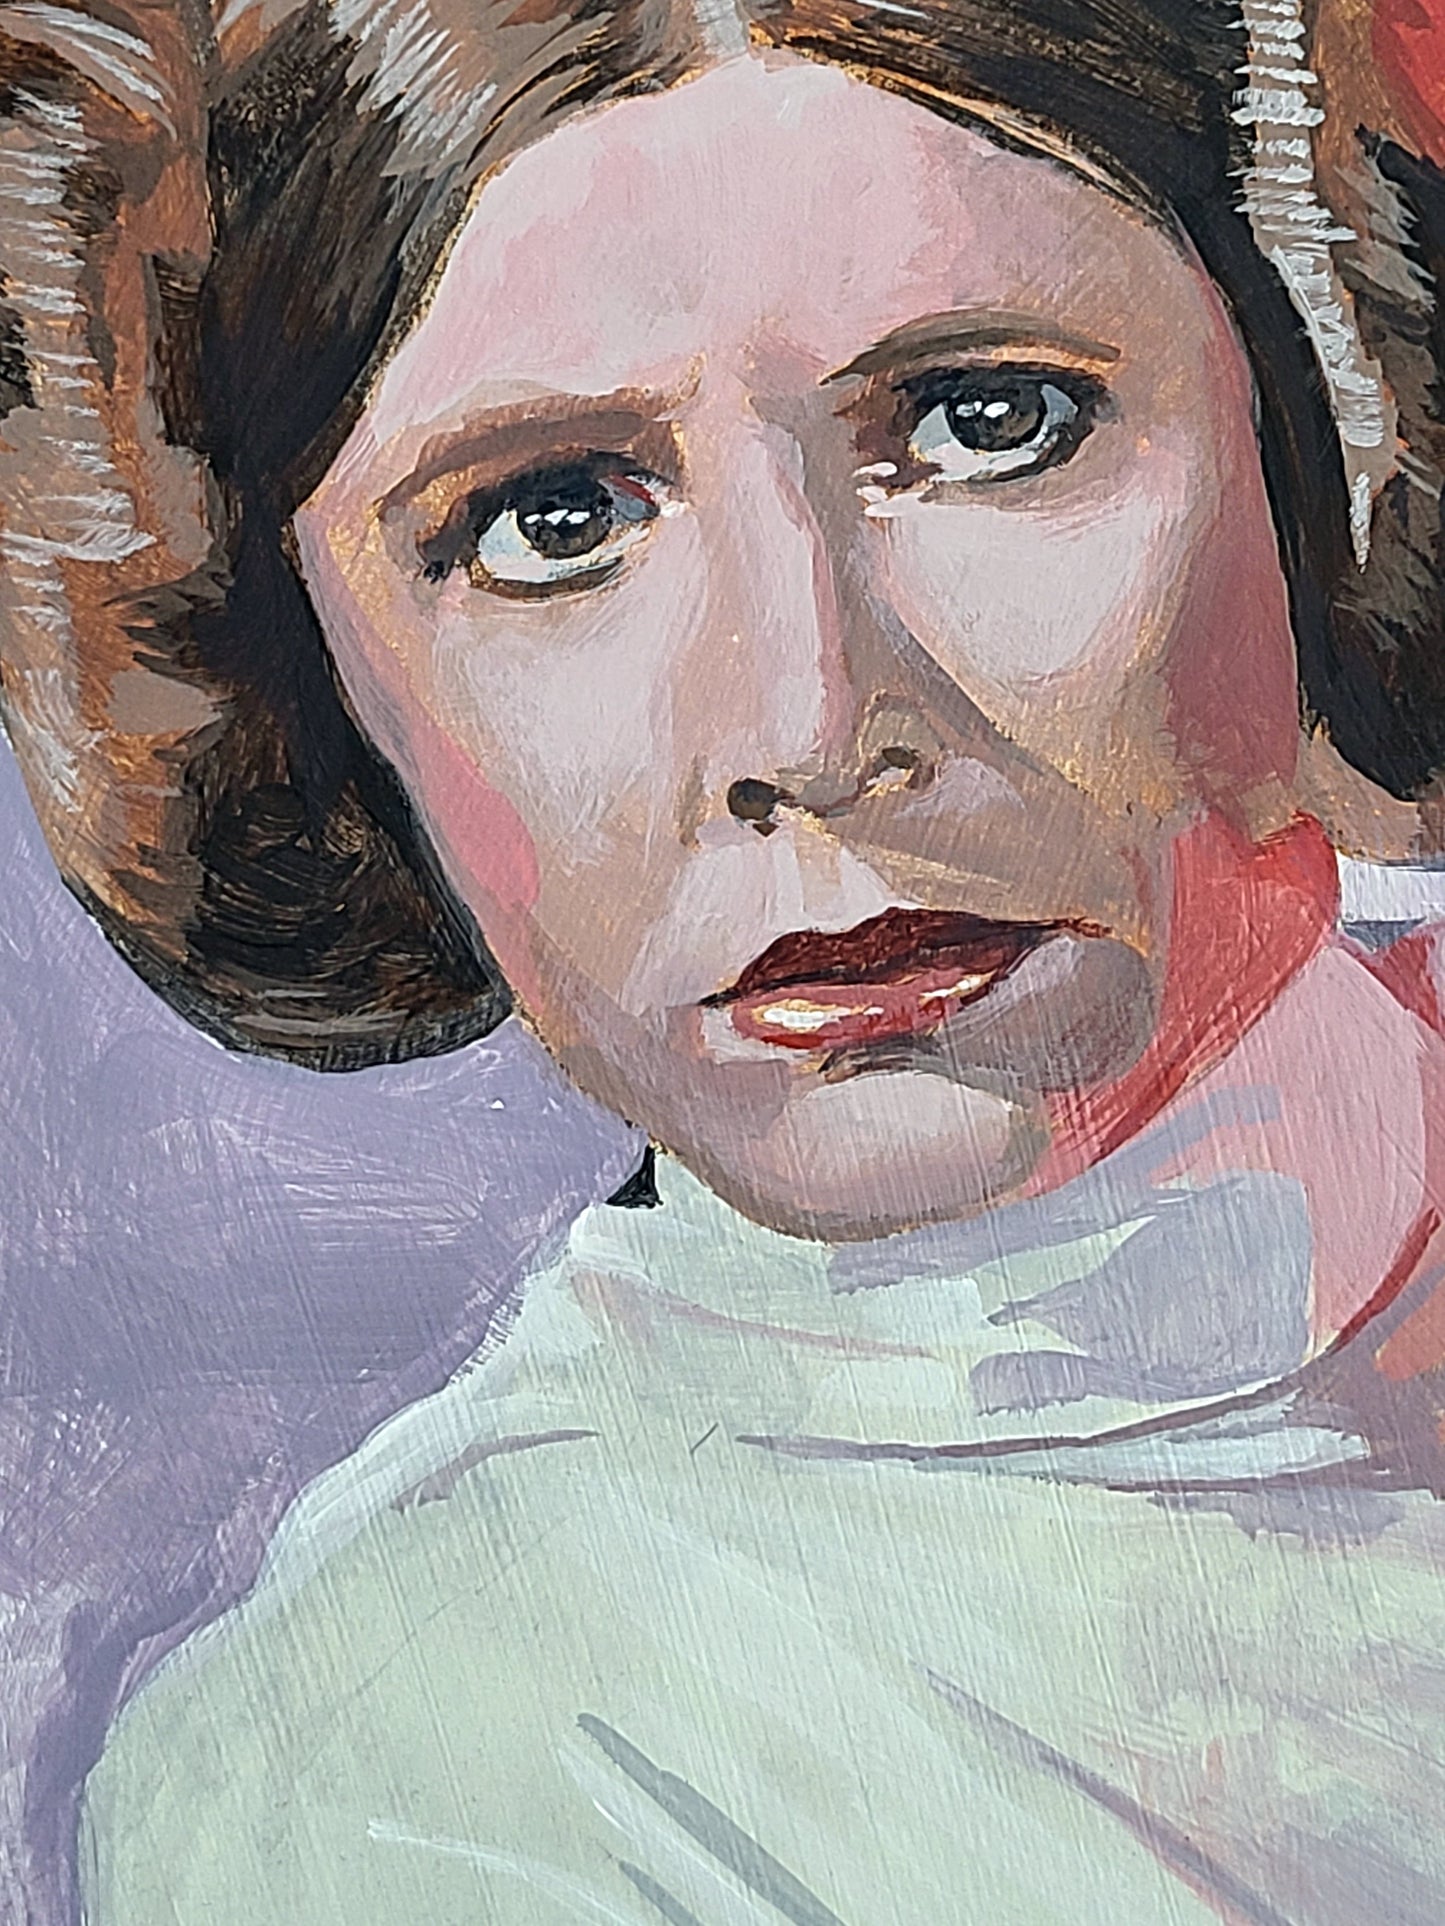 Princess Leia painting